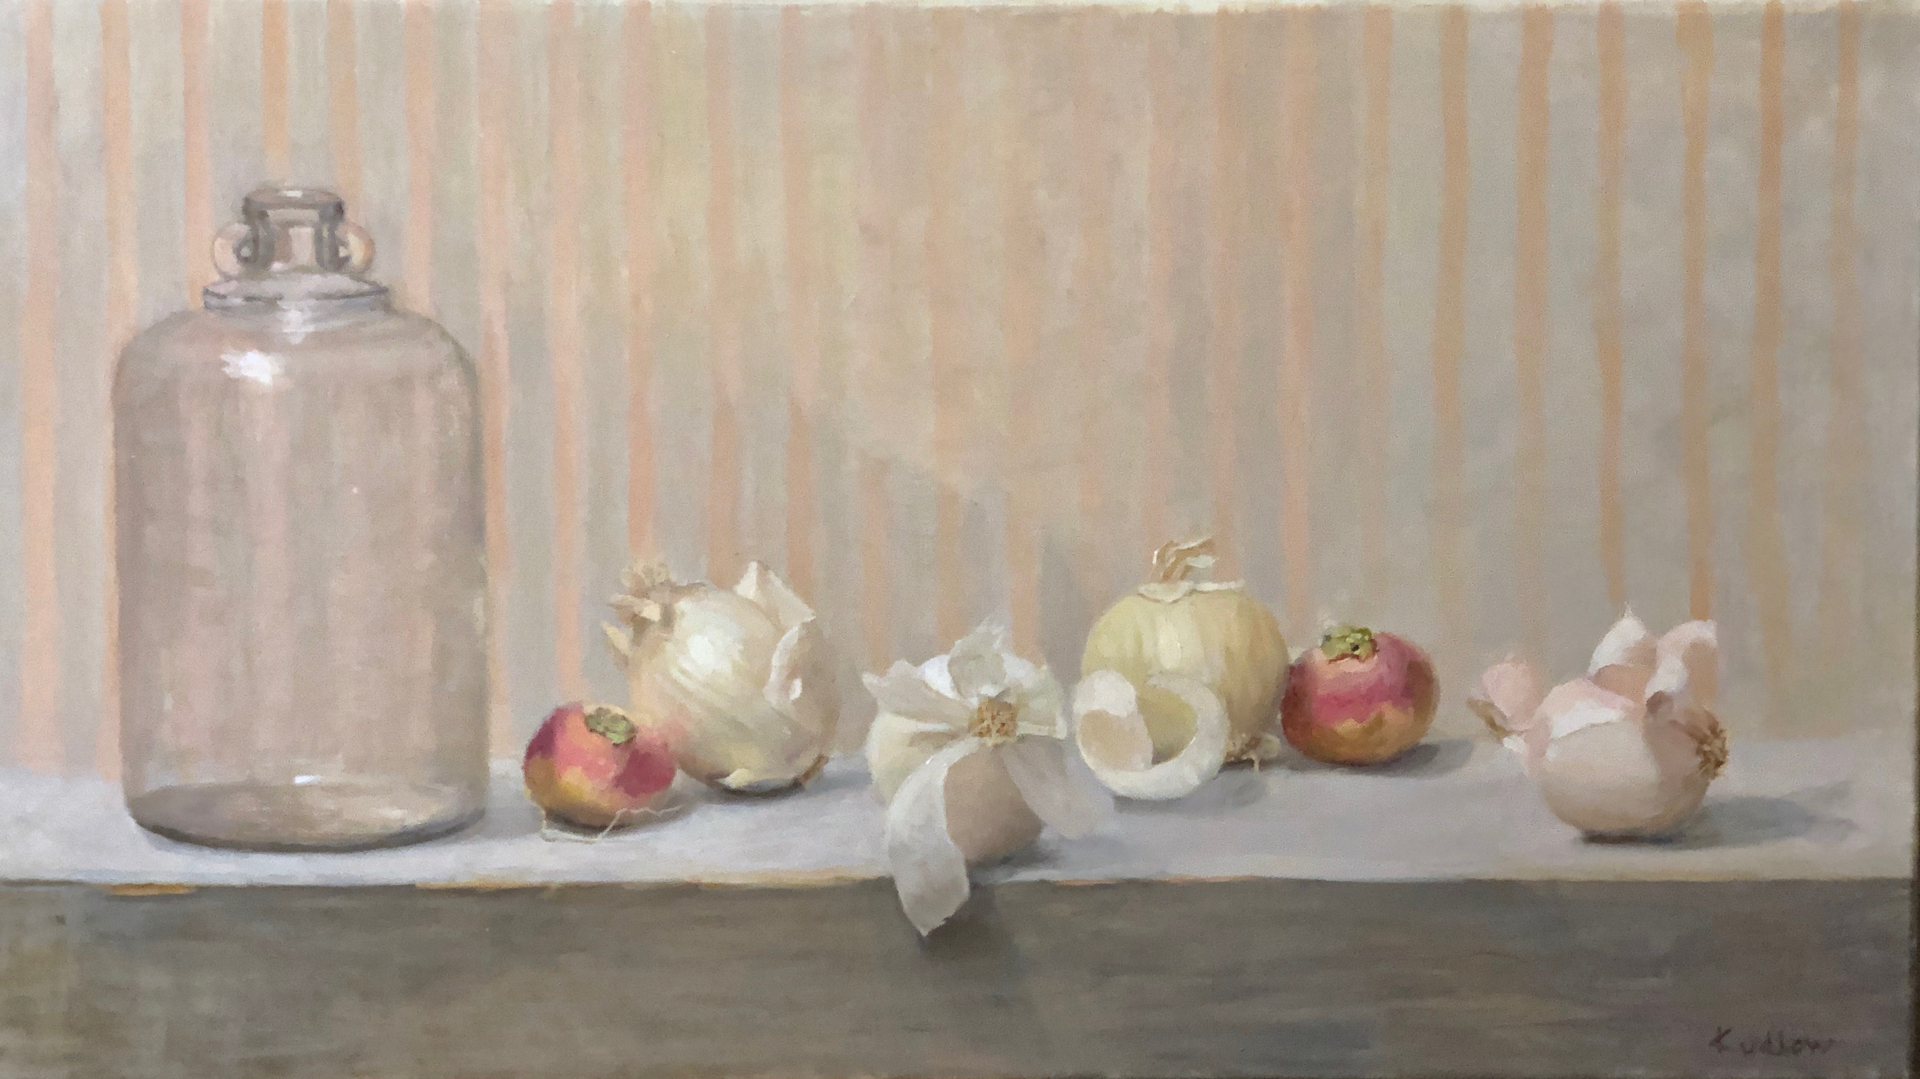 Turnips & Onions by Judith Pond Kudlow